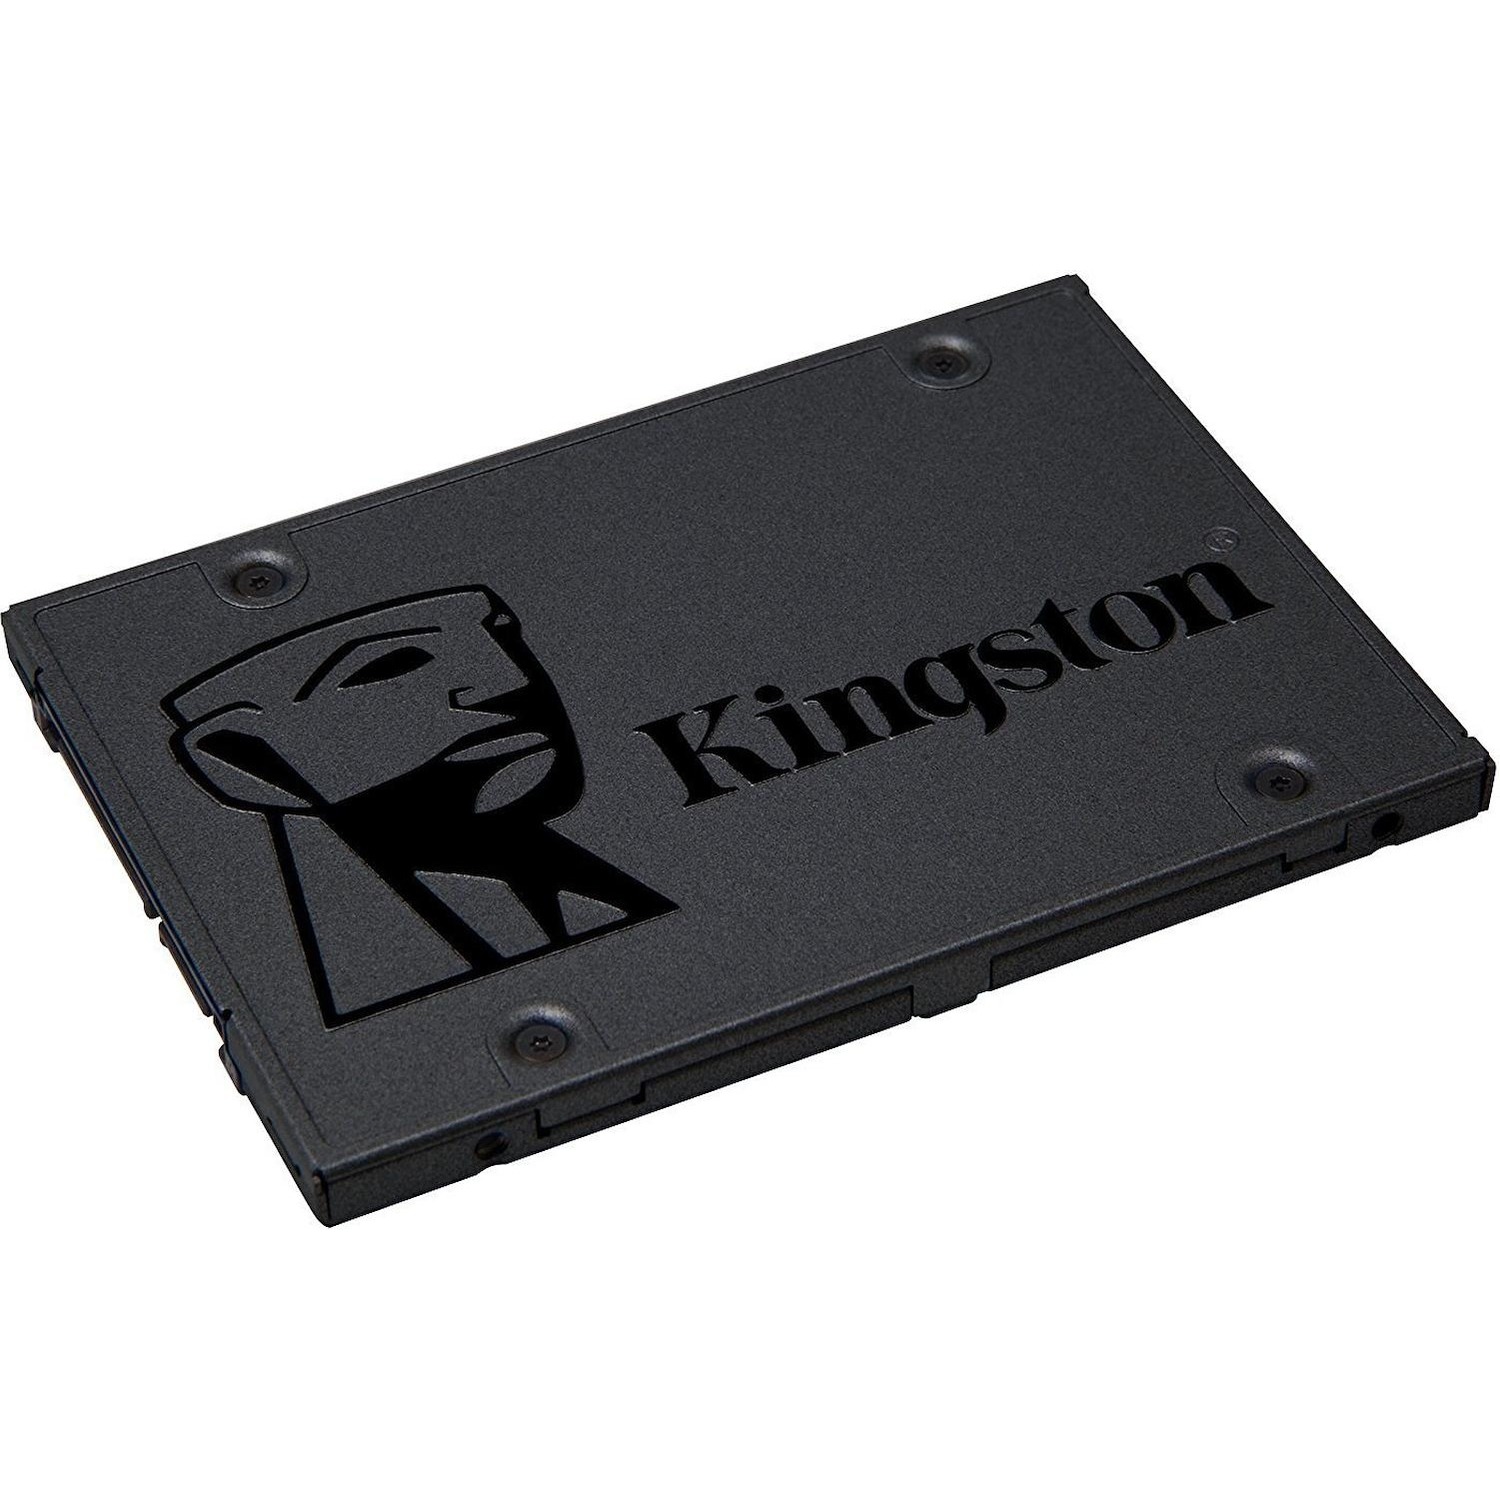 Immagine per HD SSD Kingston 240GB Sata 3 2,5" da DIMOStore